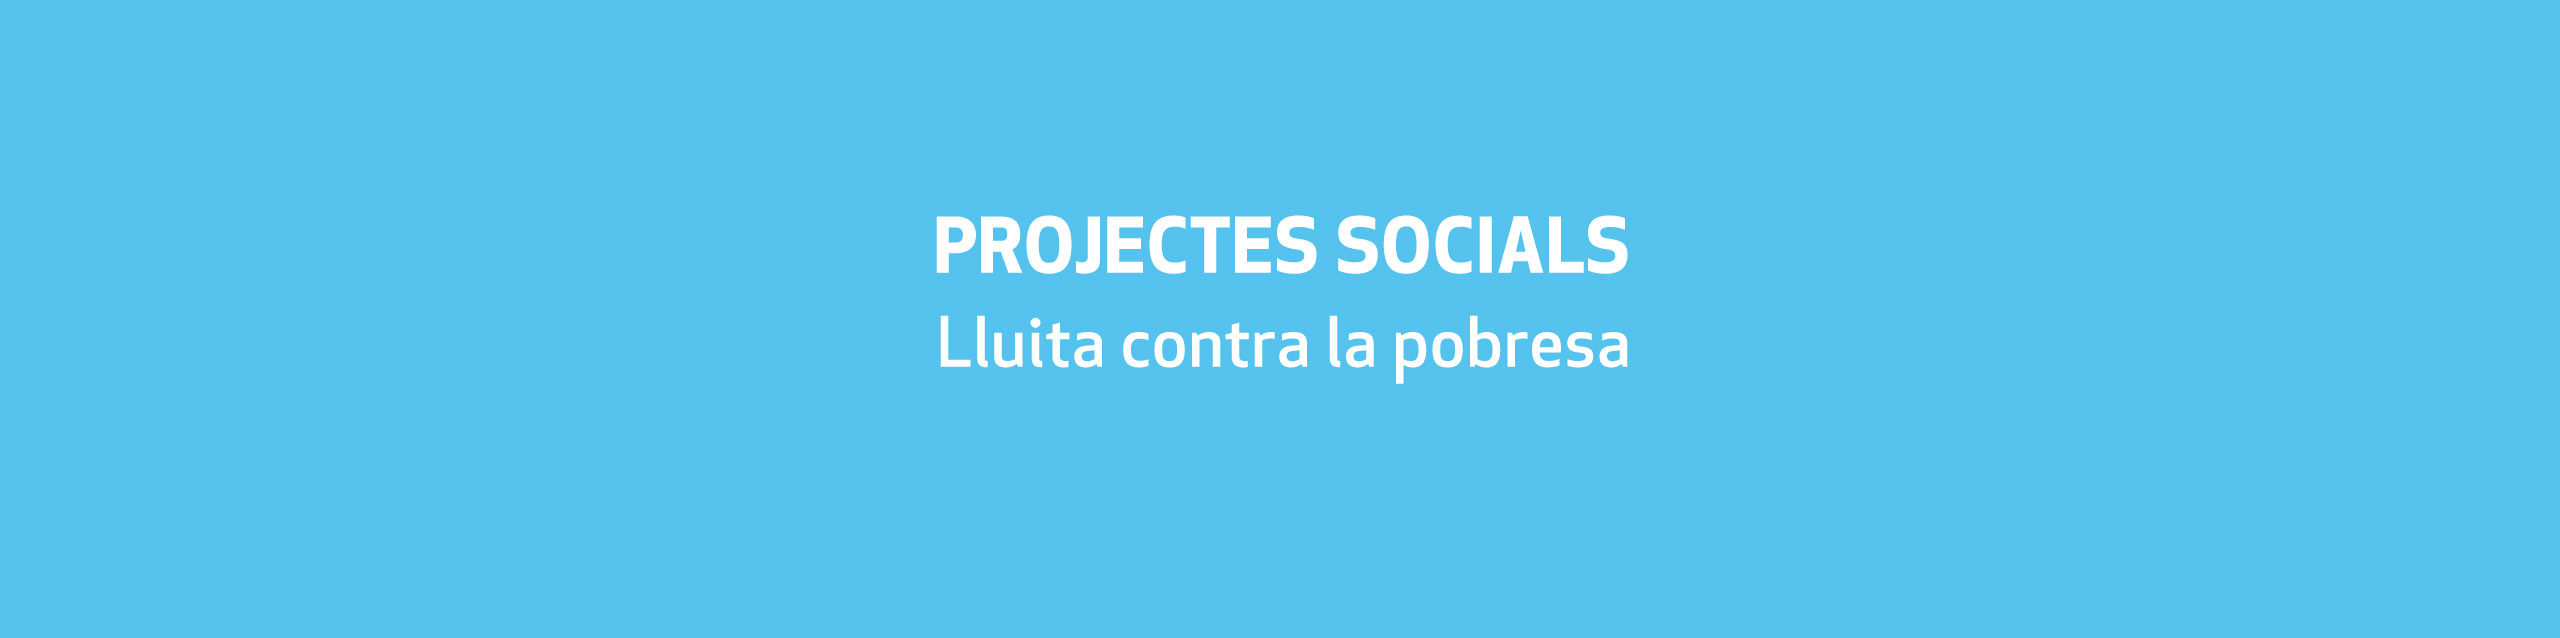 projectes socials